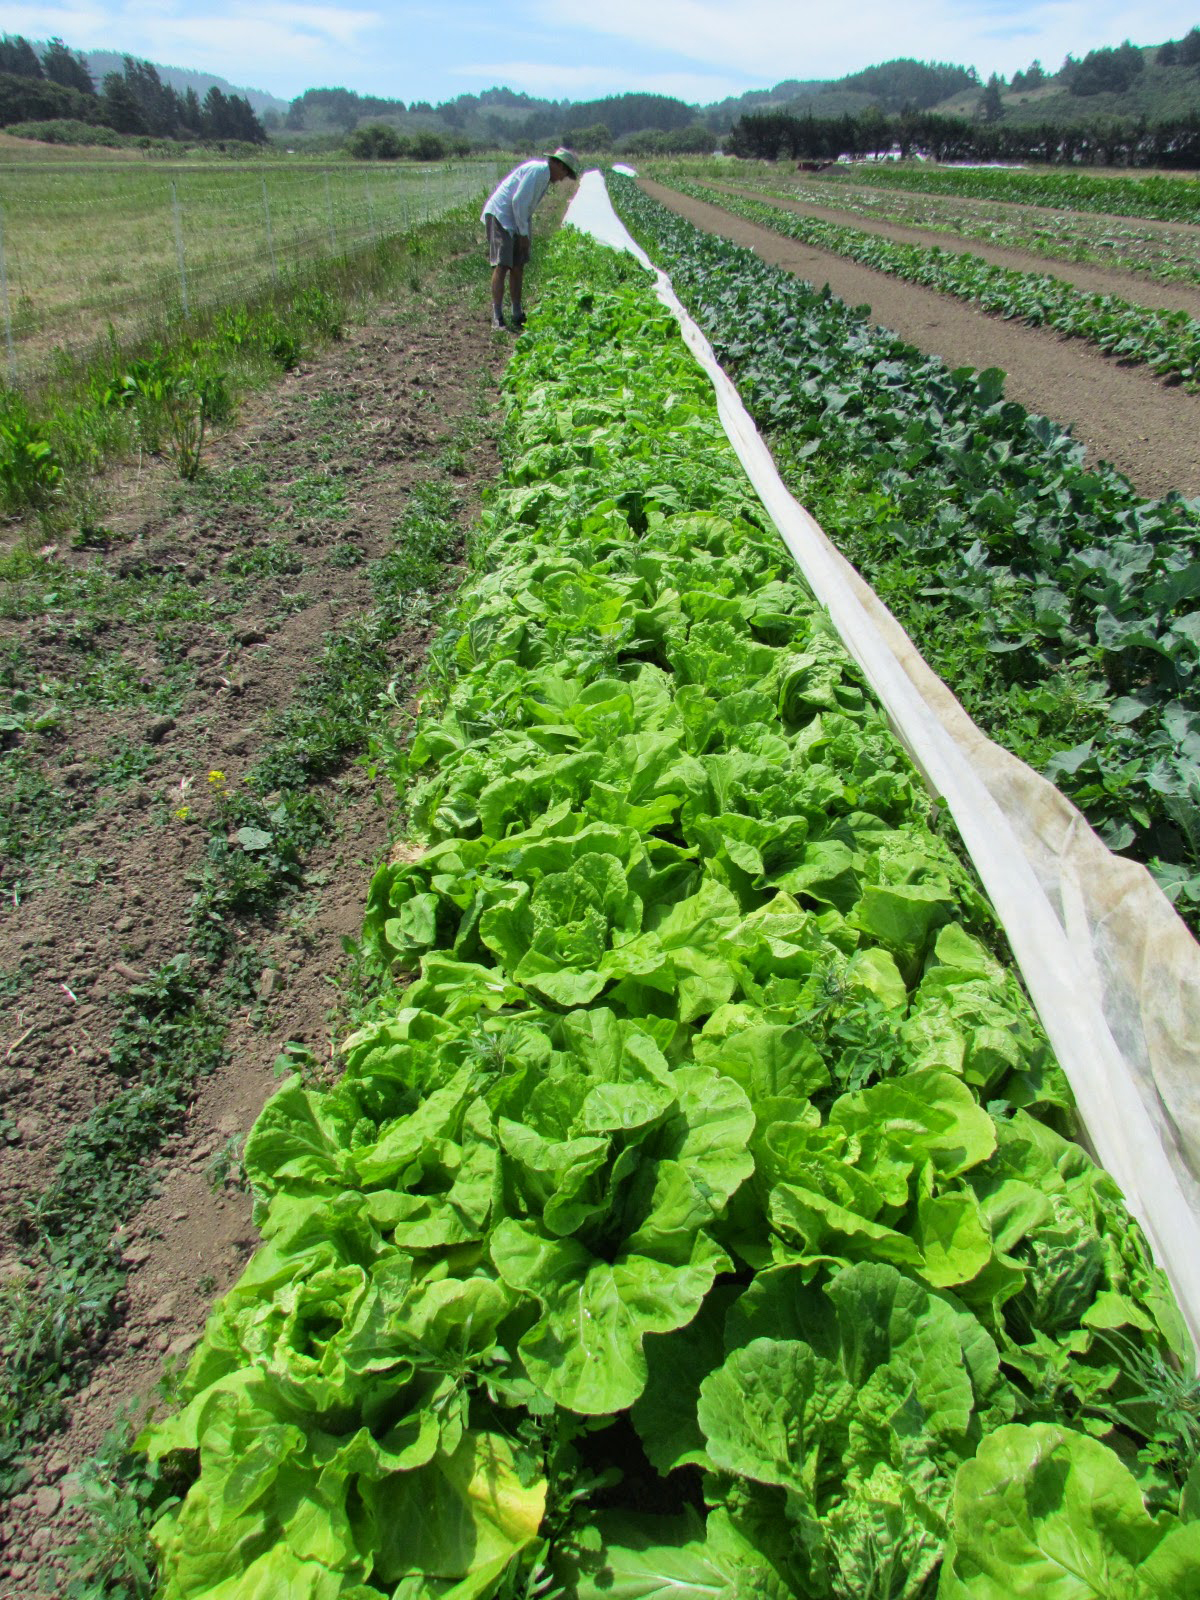 Napa-cabbage-farm